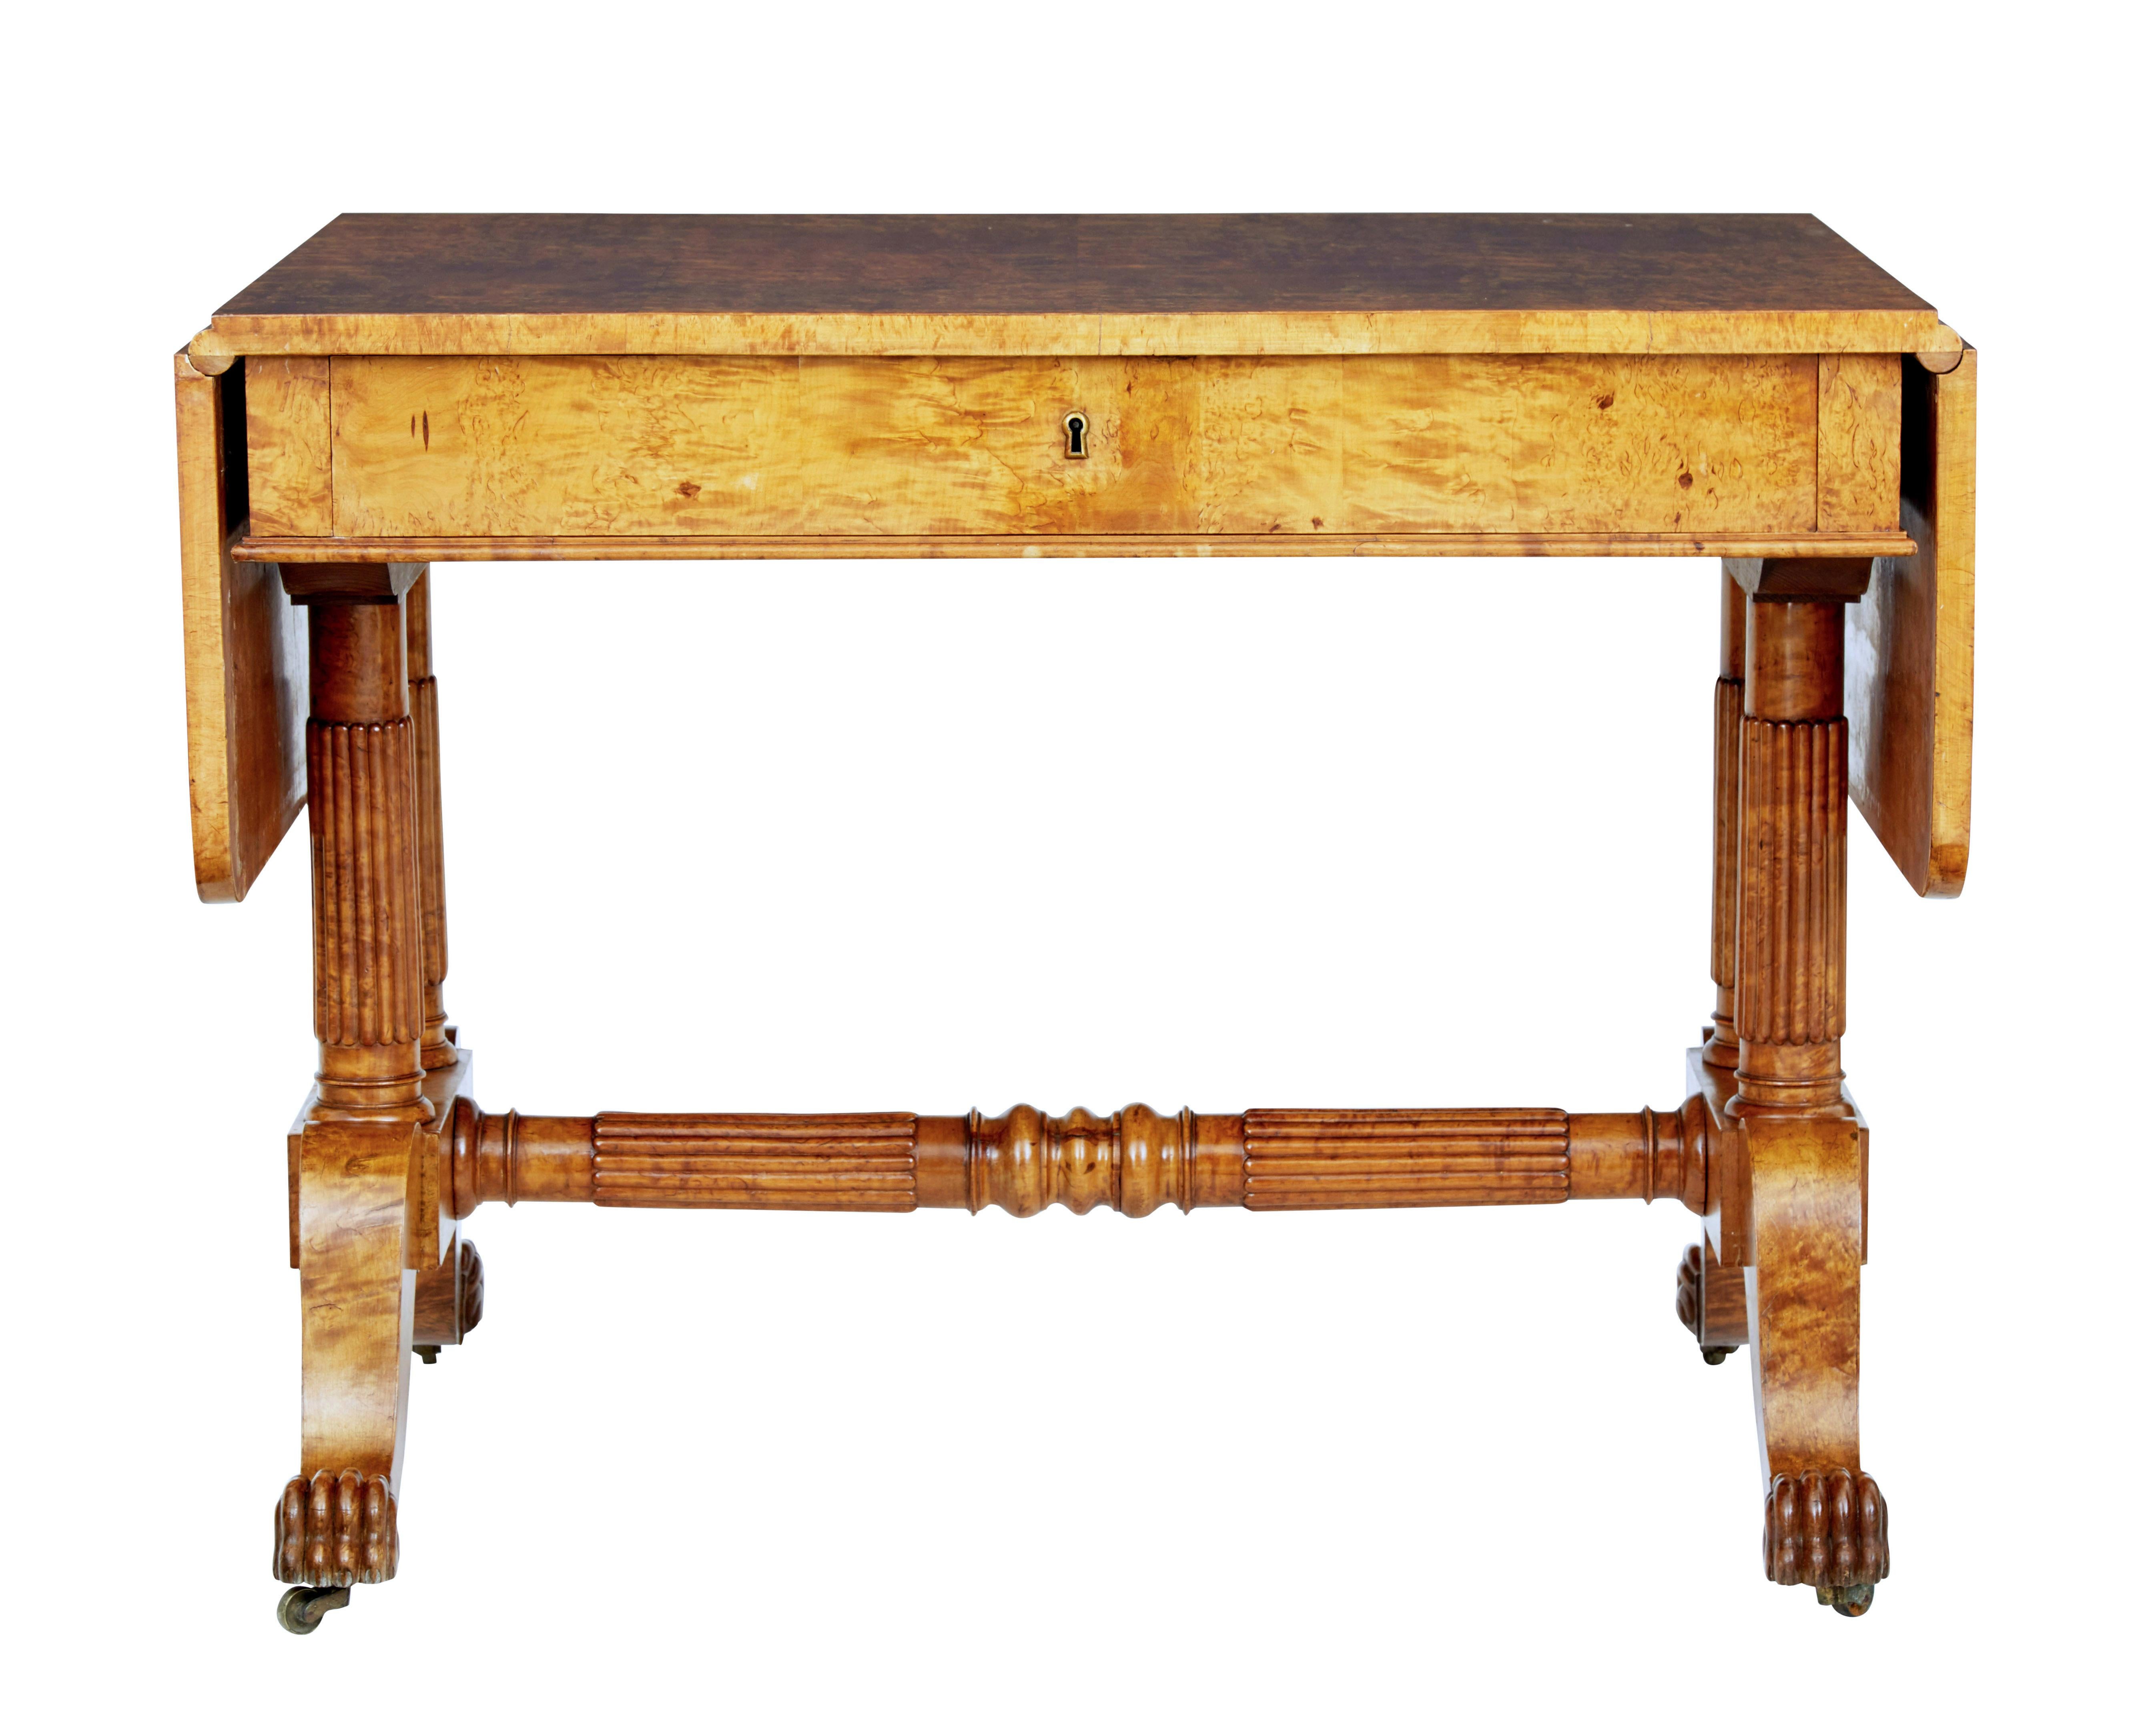 Superbe table de canapé d'époque Biedermeier, circa 1825.

Magnifiquement fabriqué en loupe de bouleau, ce qui lui confère un grain et une couleur intenses.  Les rabats rabattables permettent d'obtenir une longueur totale d'un peu plus de 63